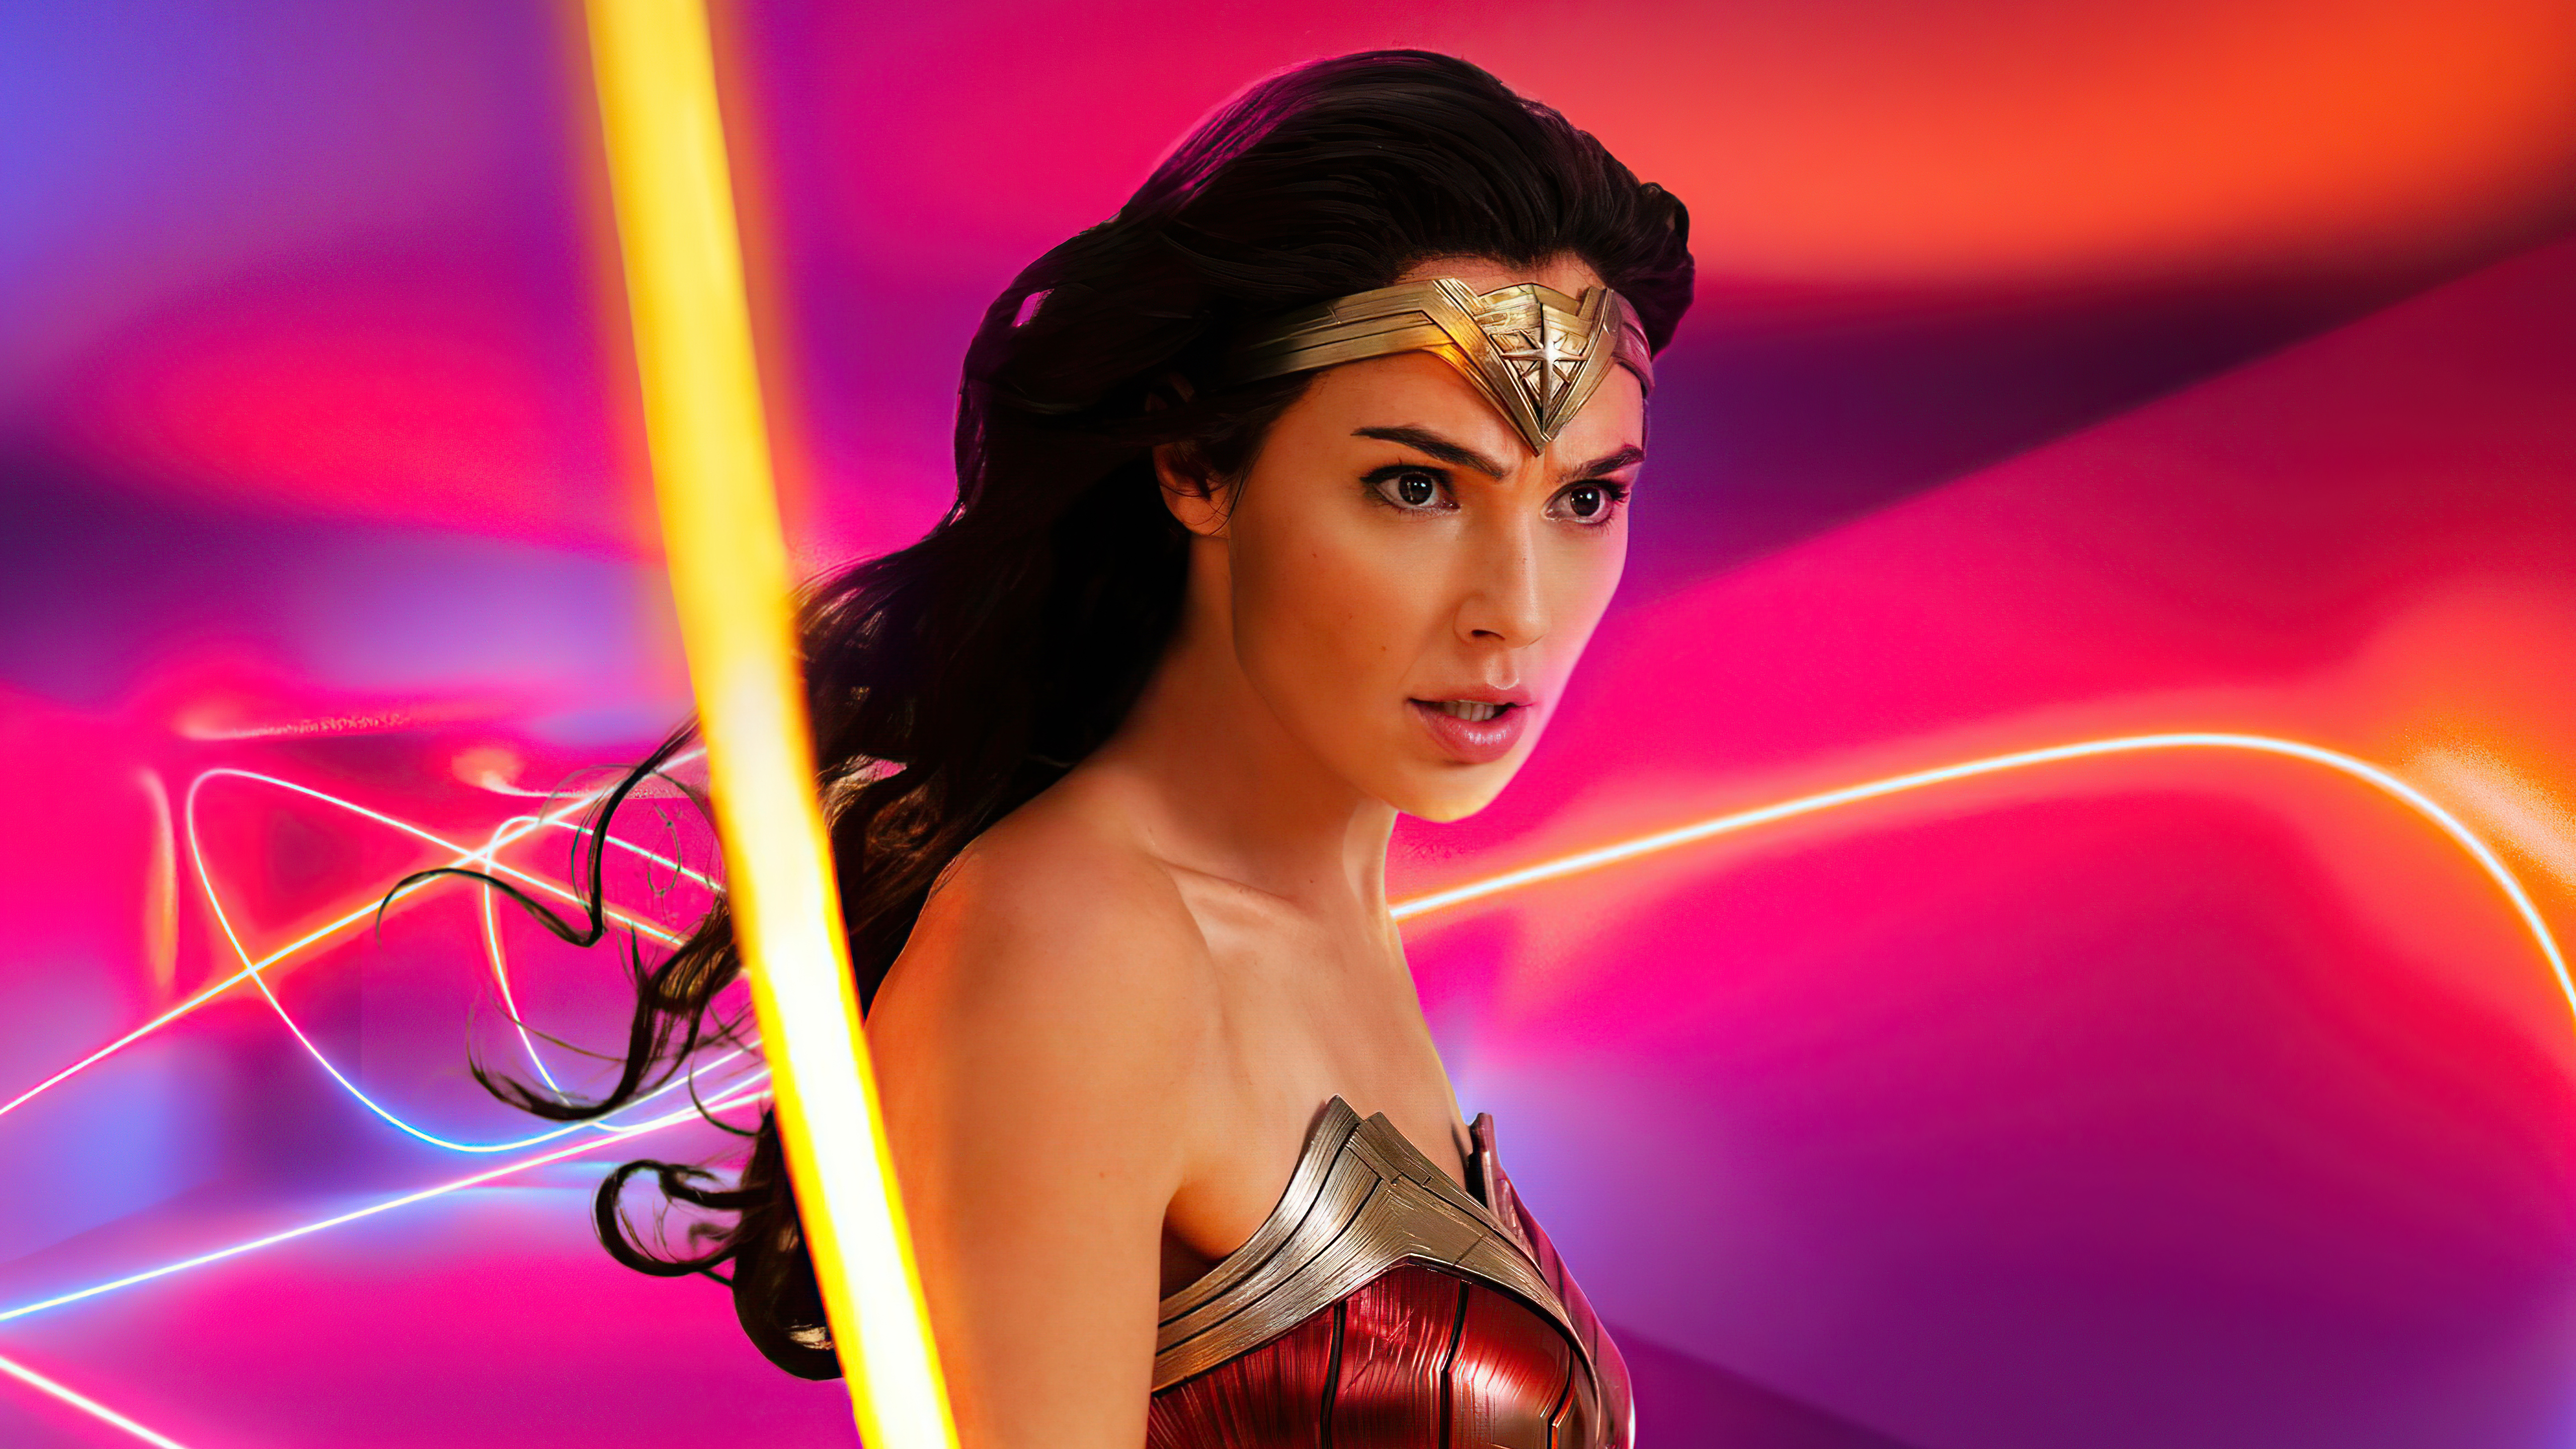 Free download wallpaper Movie, Dc Comics, Diana Prince, Wonder Woman, Gal Gadot, Wonder Woman 1984 on your PC desktop